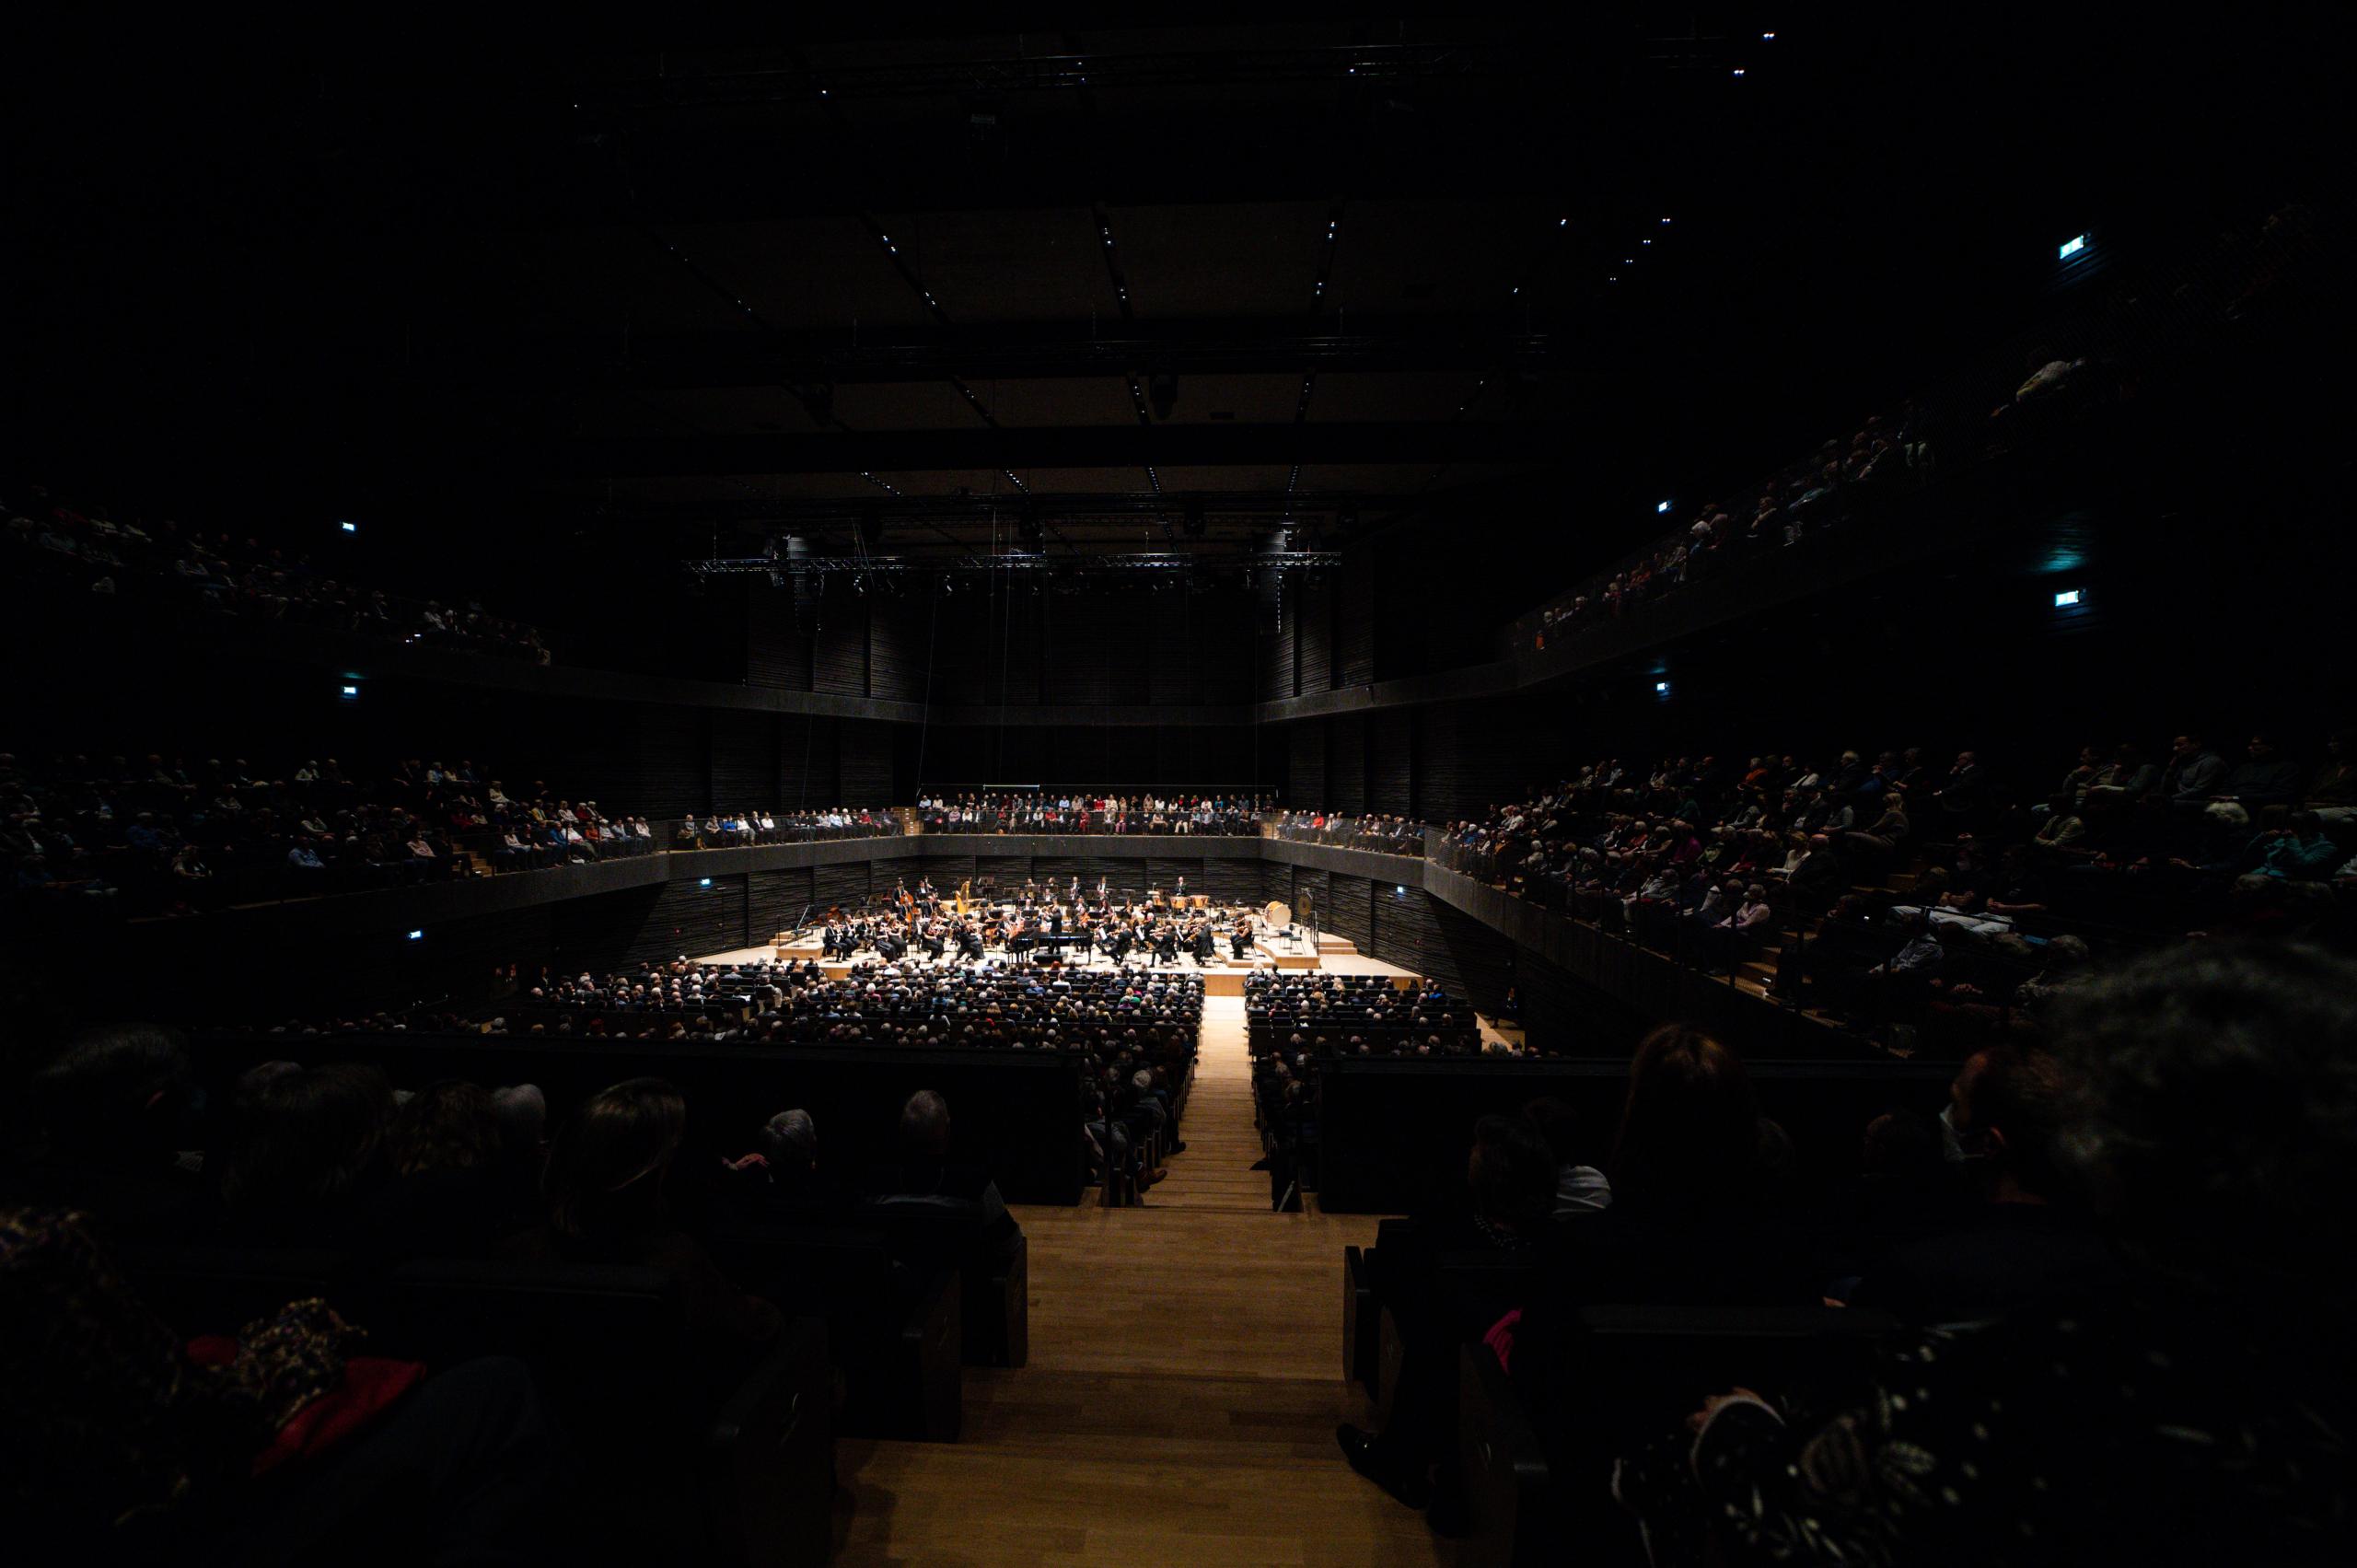 Ein dunkler Konzertsaal, der Blick geht über das Publikum hinweg von hinten auf die Bühne mit Orchester